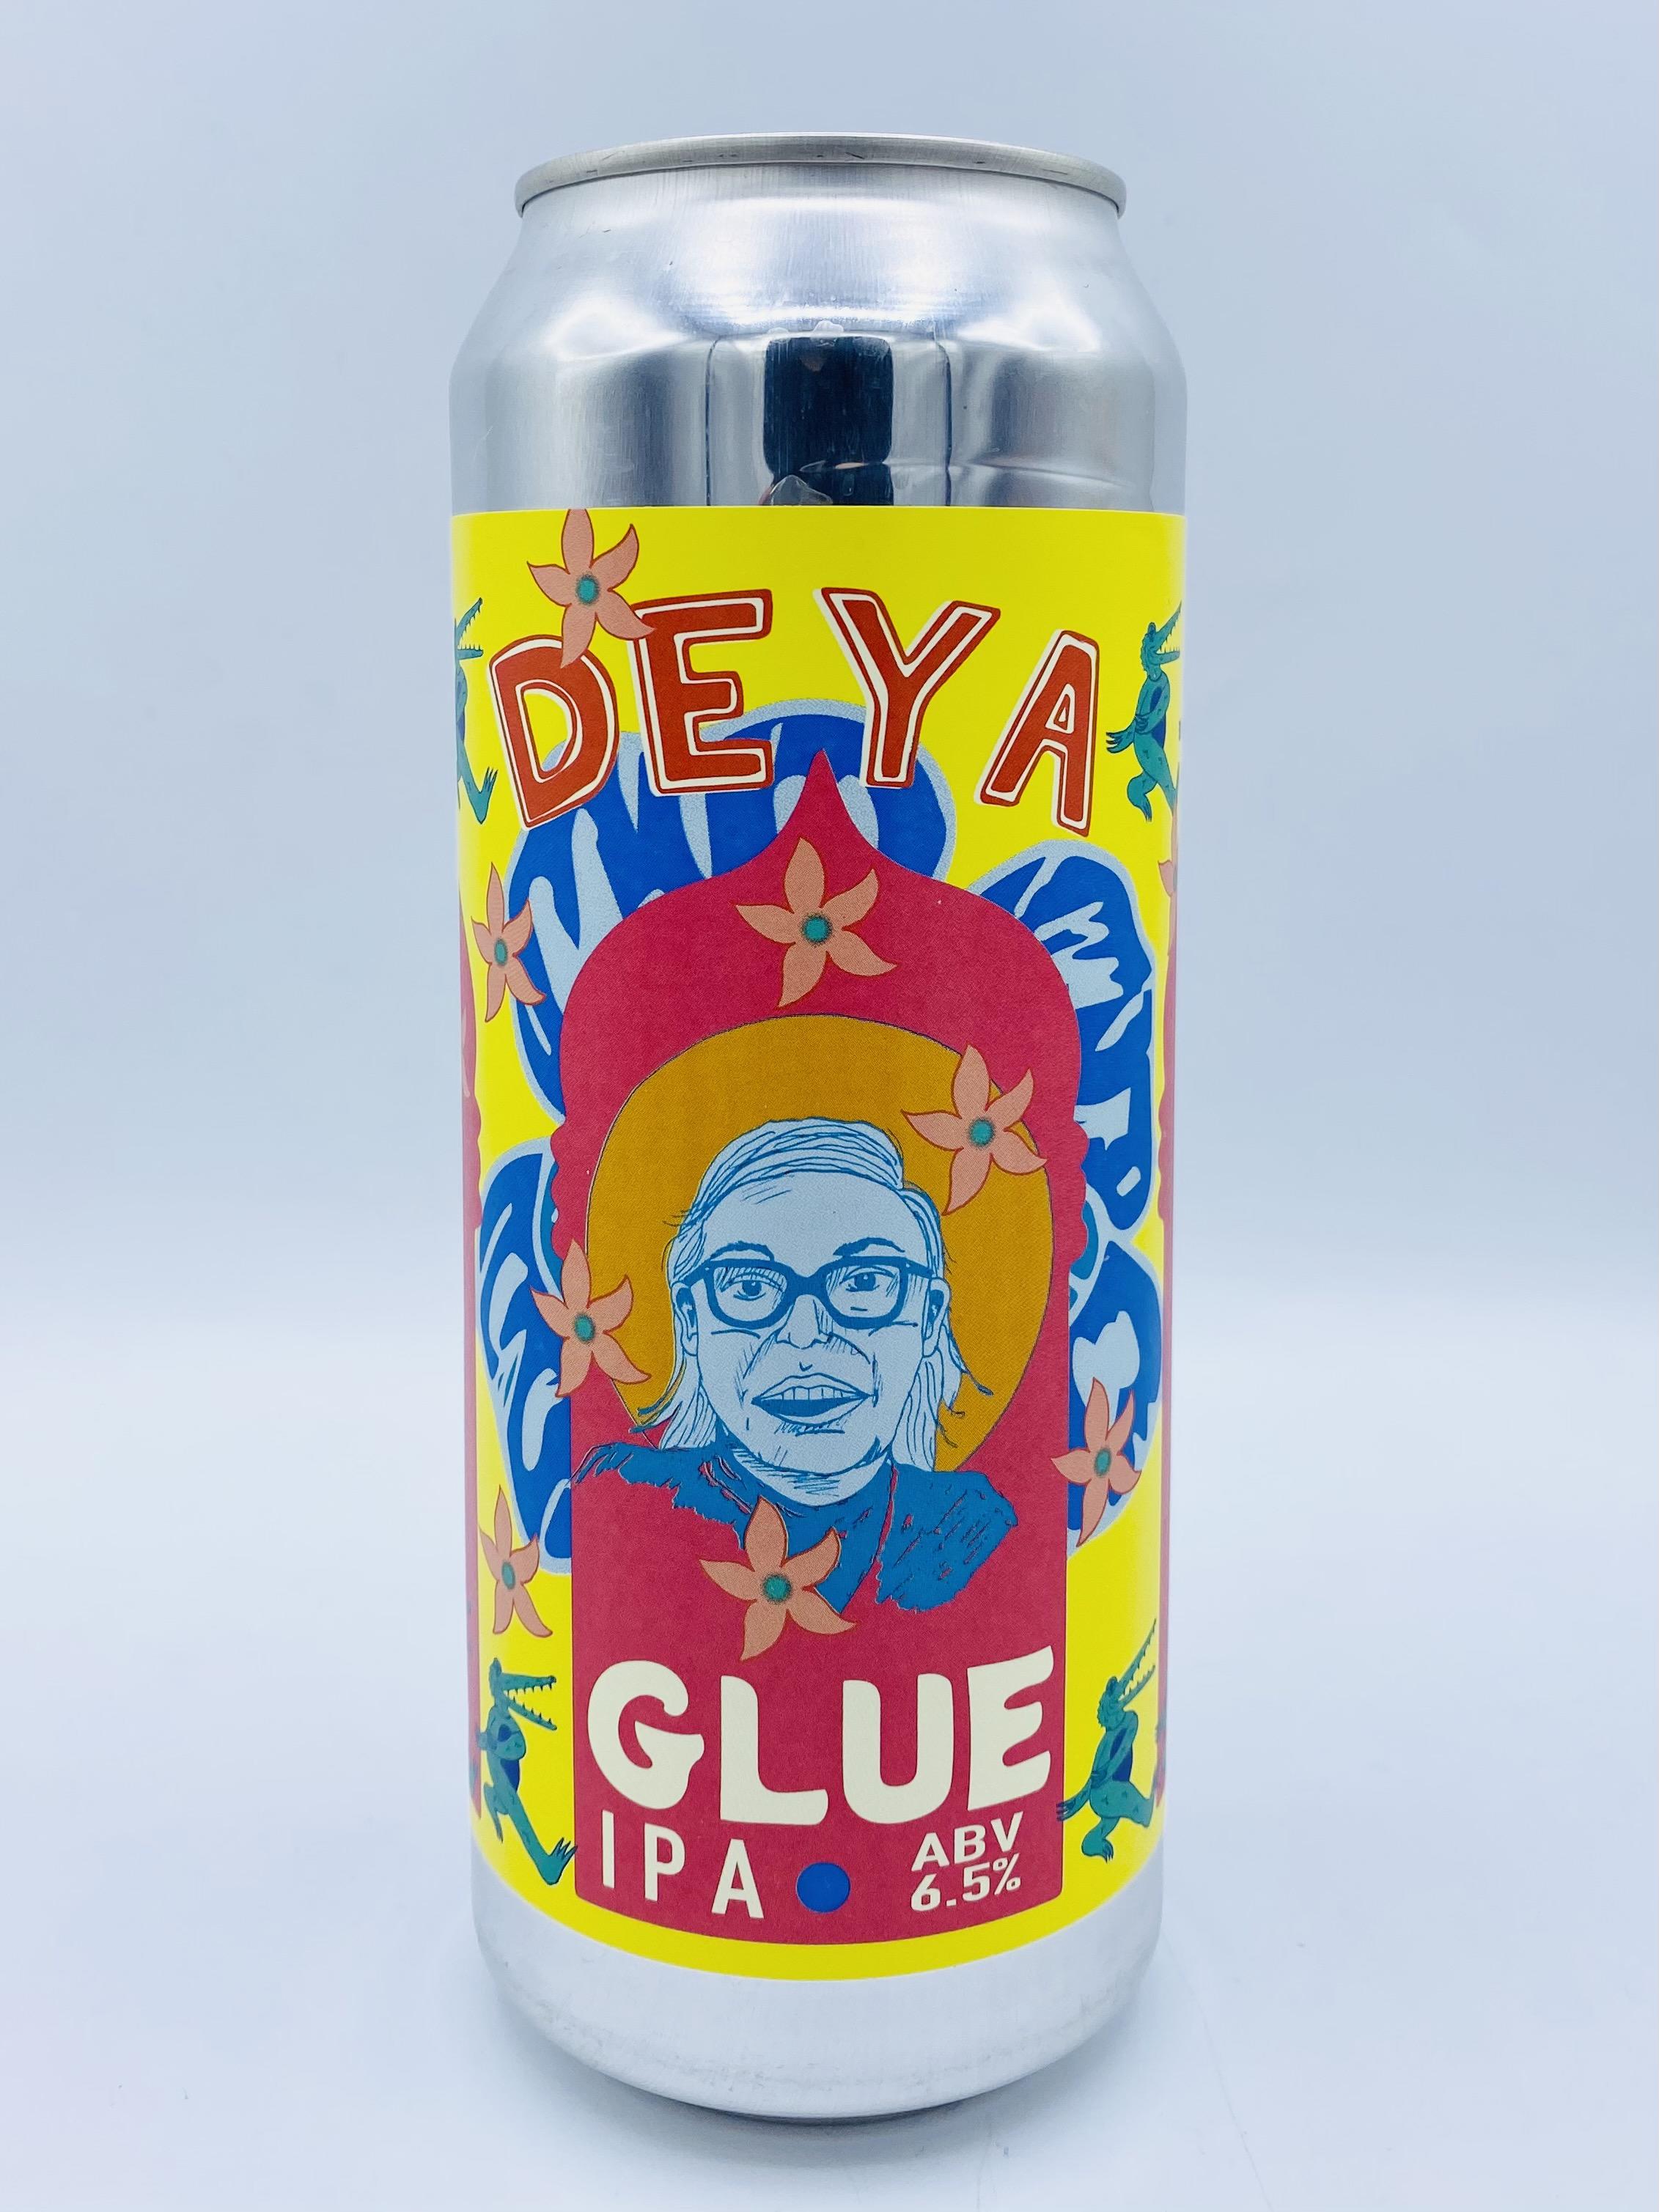 Deya - Glue 6.5%